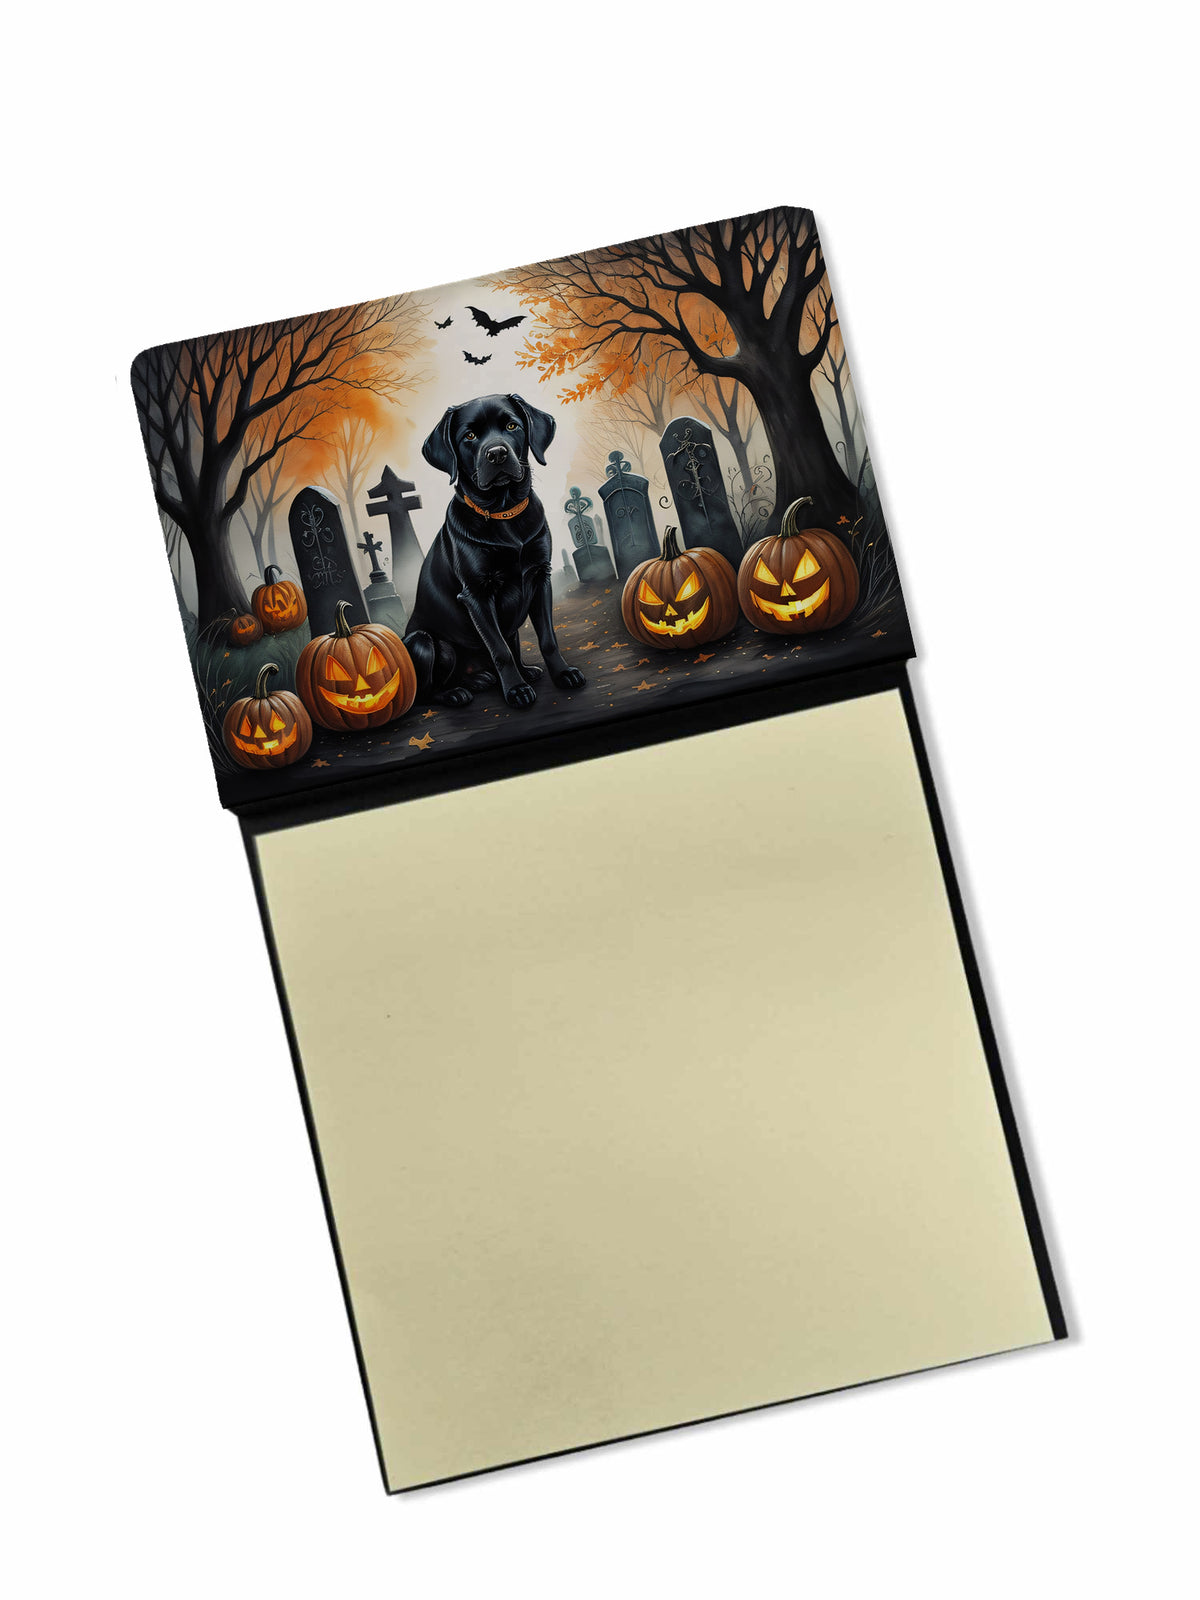 Buy this Black Labrador Retriever Spooky Halloween Sticky Note Holder